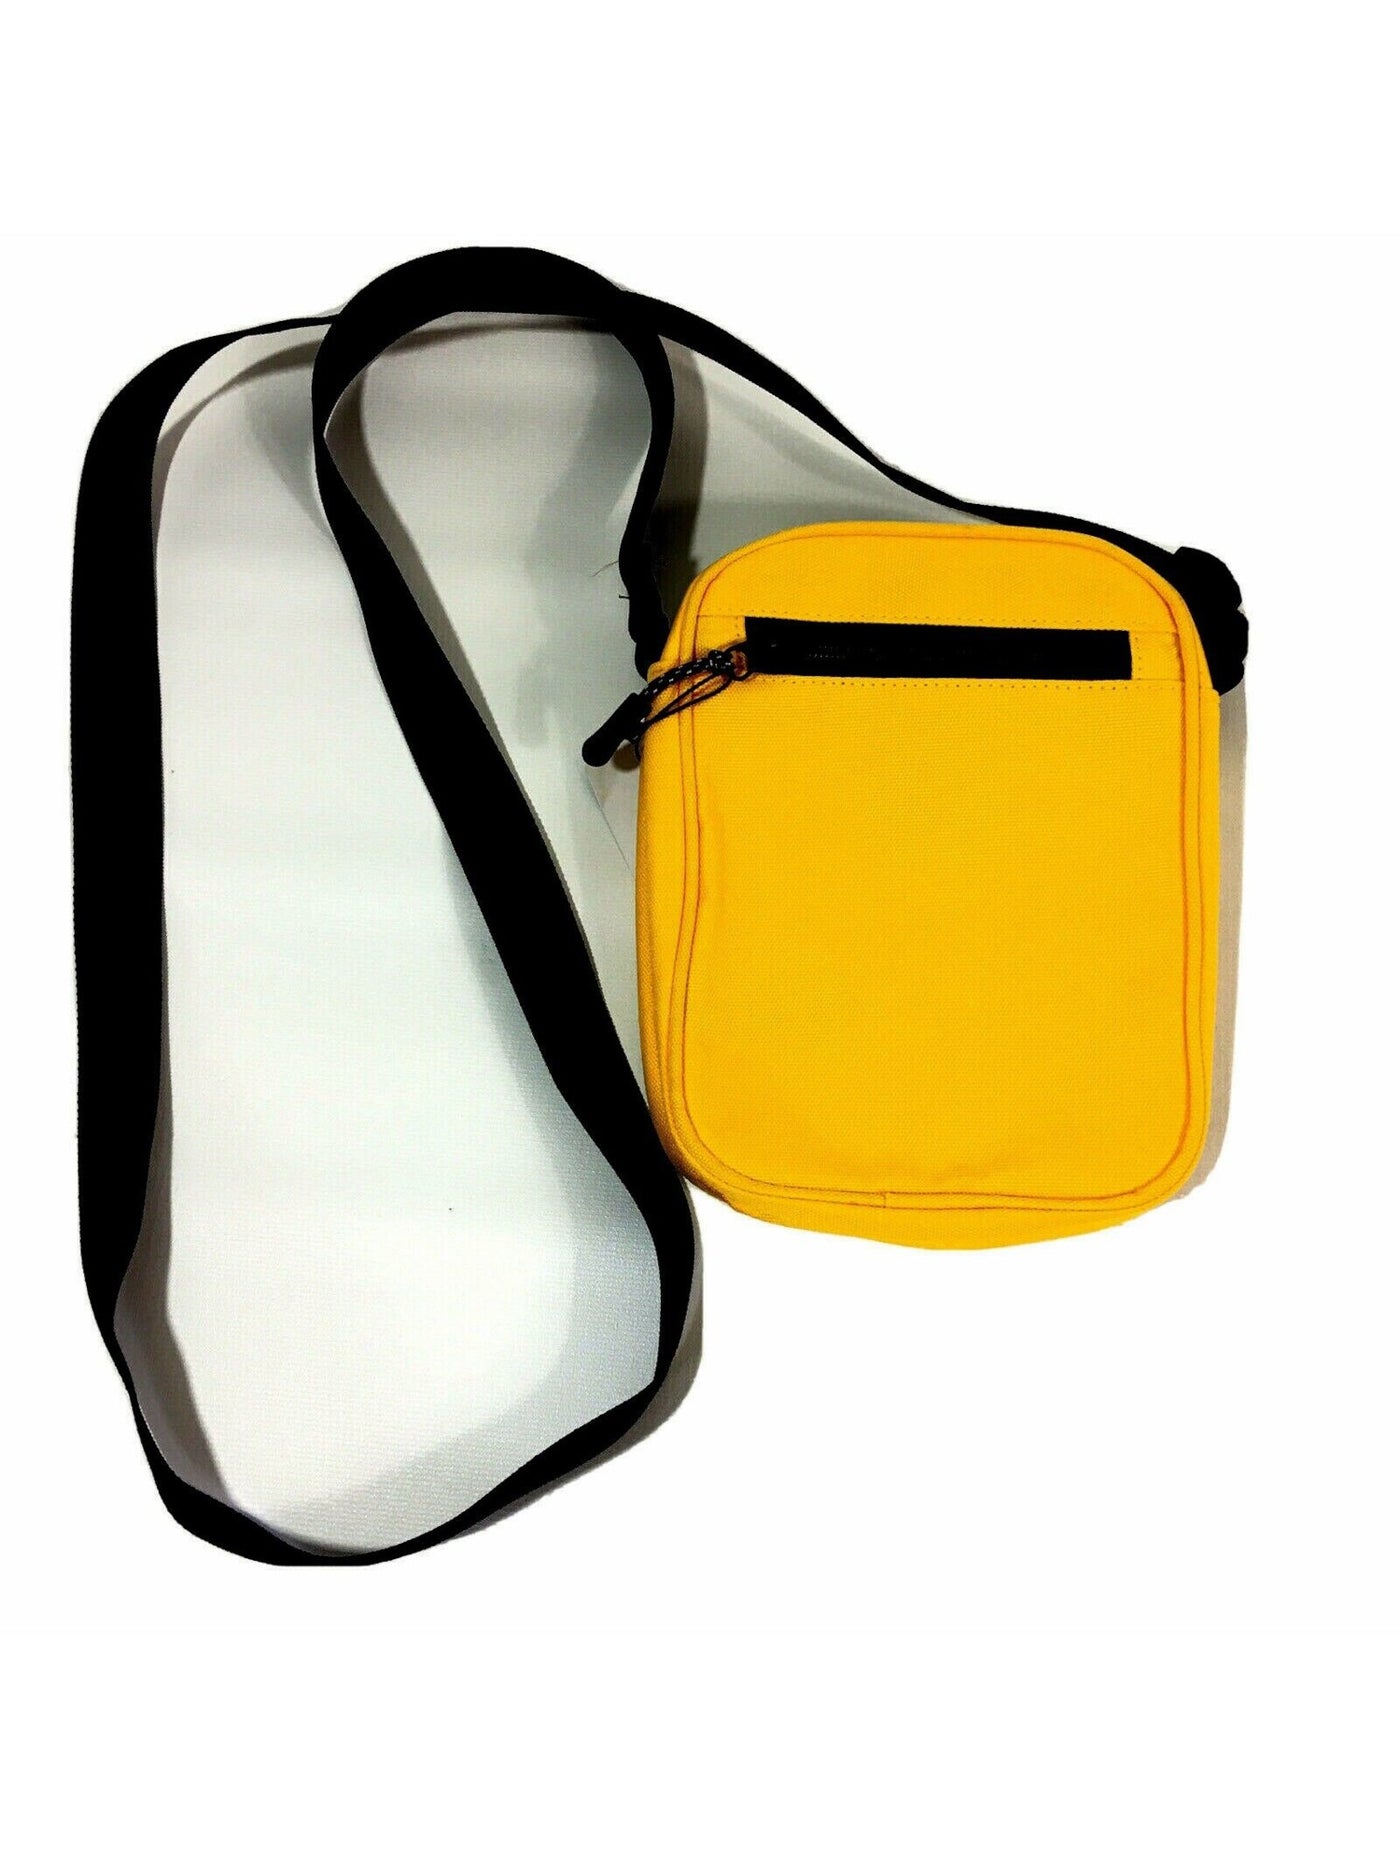 Bespoke Yellow Adjustable Strap Shoulder Bag